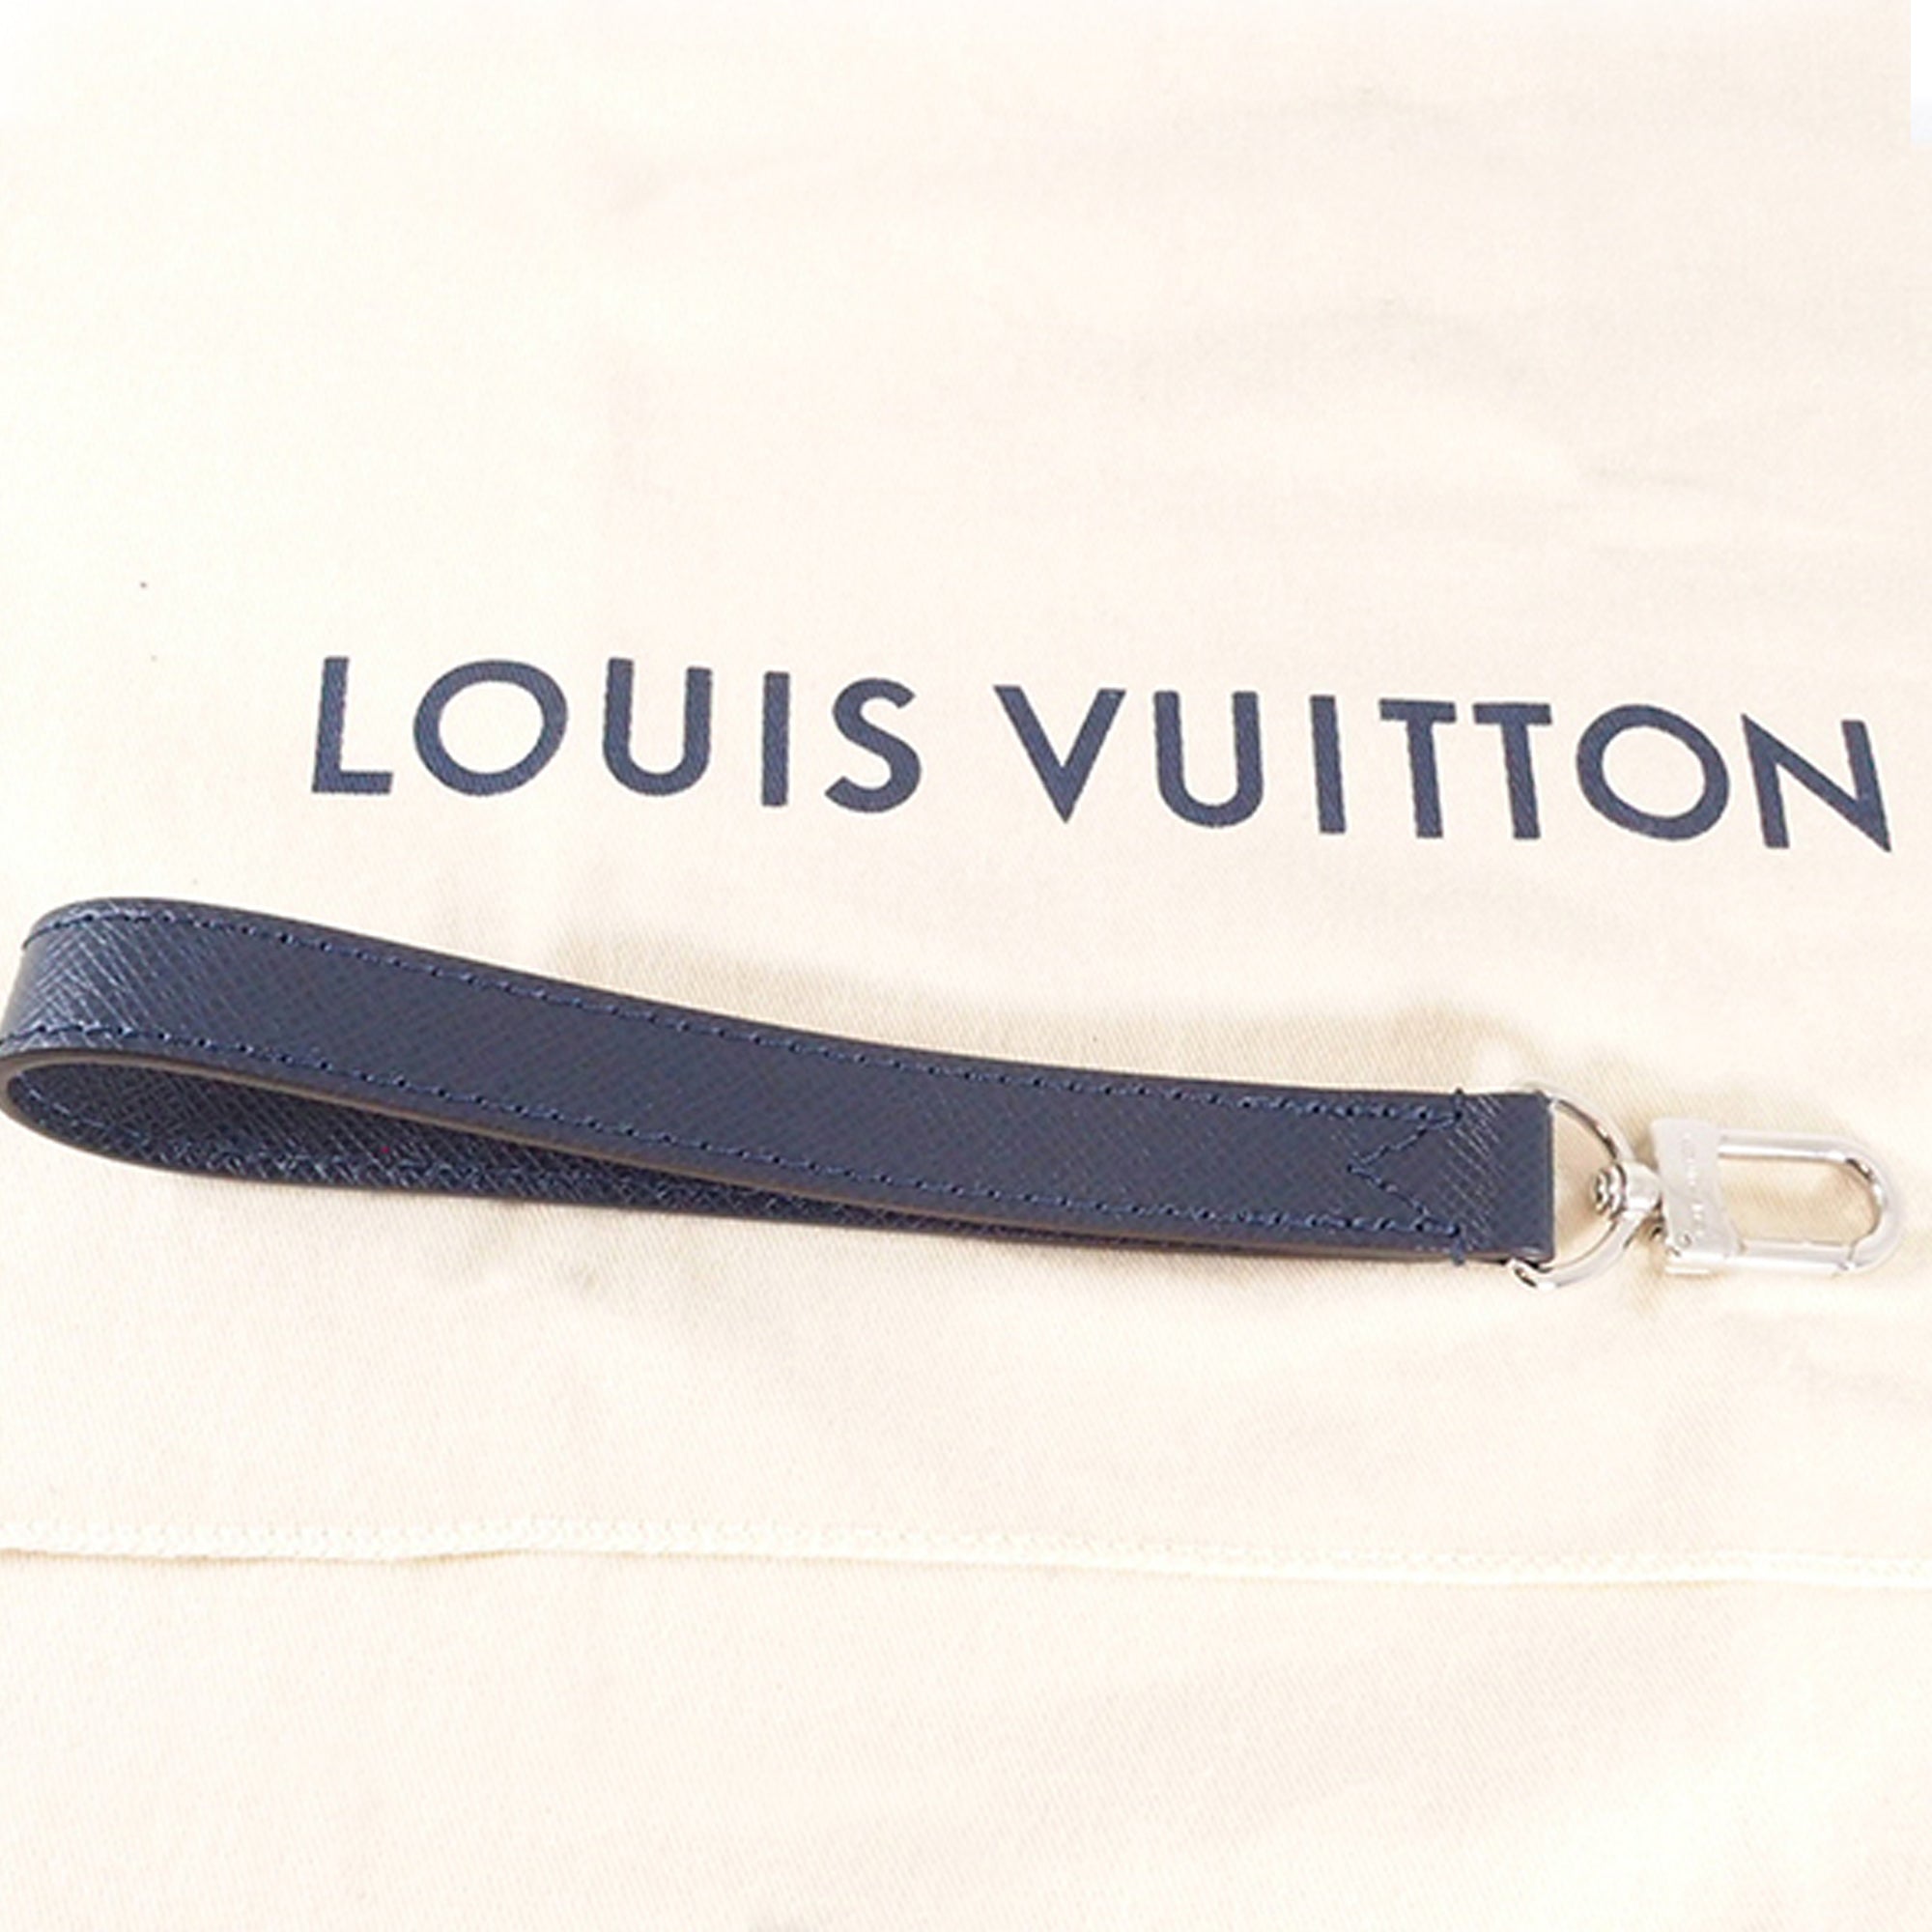 Shop Louis Vuitton Pochette Kasai (M30441) by lifeisfun